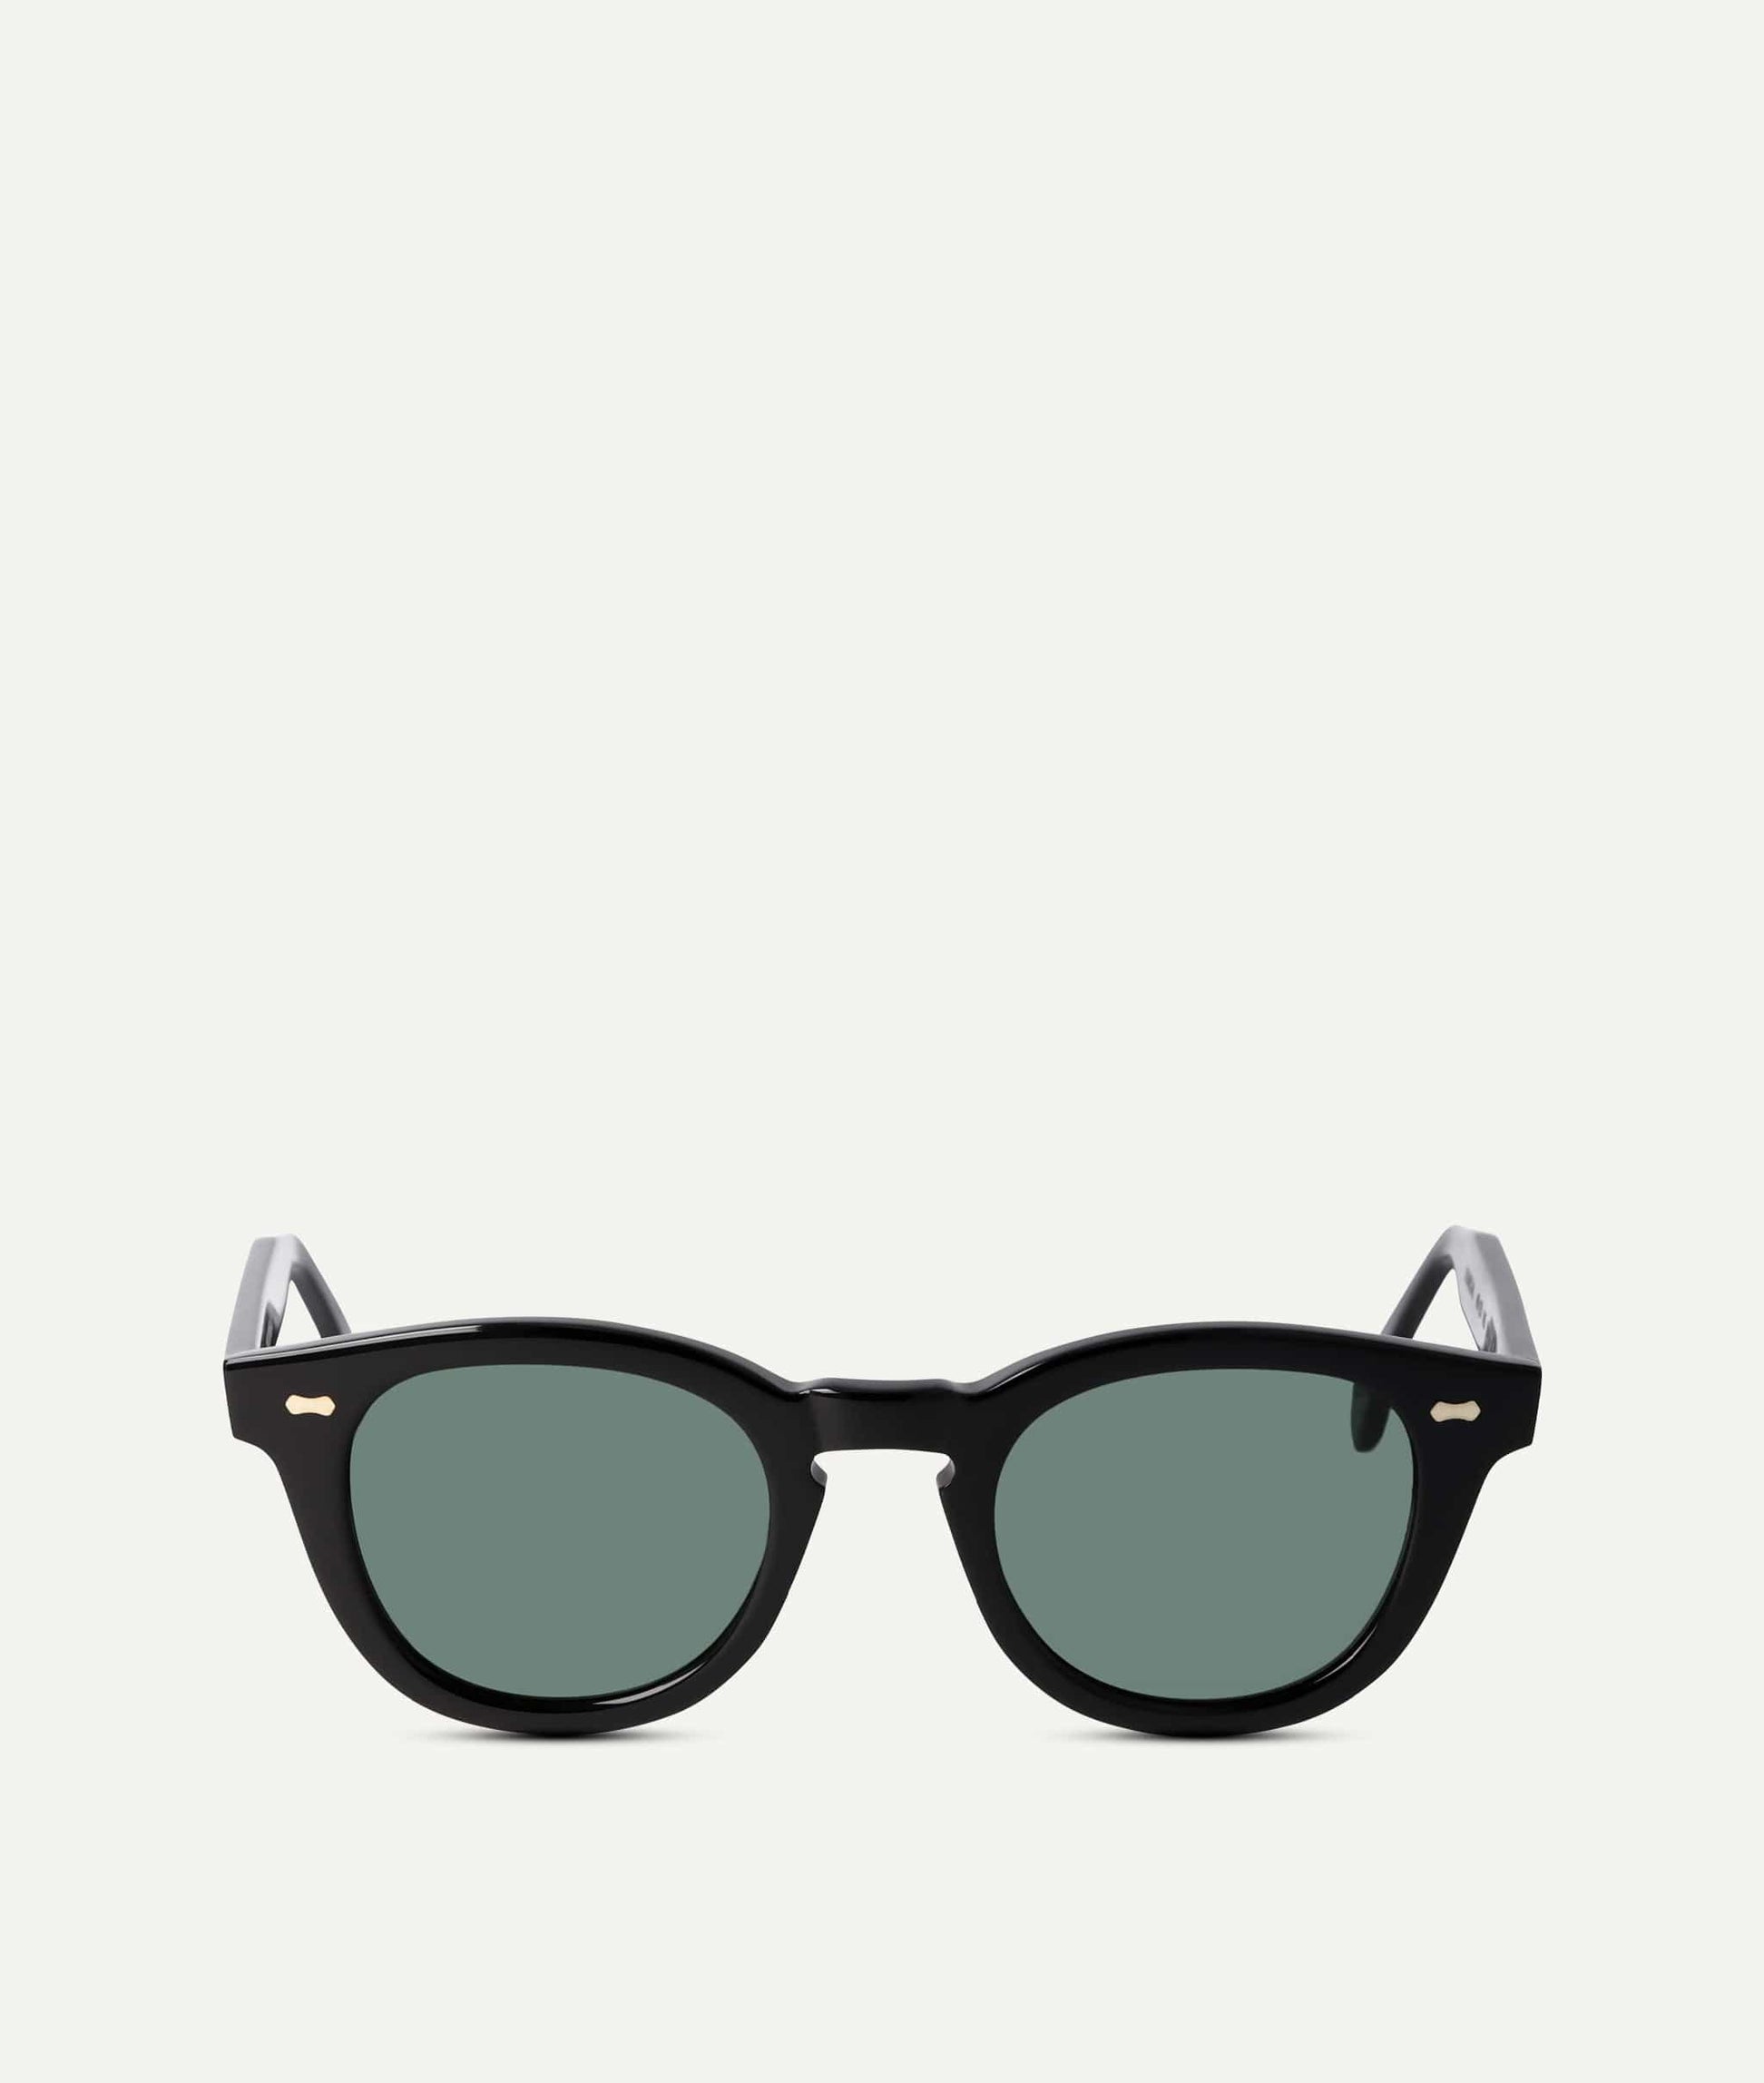 Herrensonnenbrillen | Premium-Sonnenbrillen für Männer | ETIQL